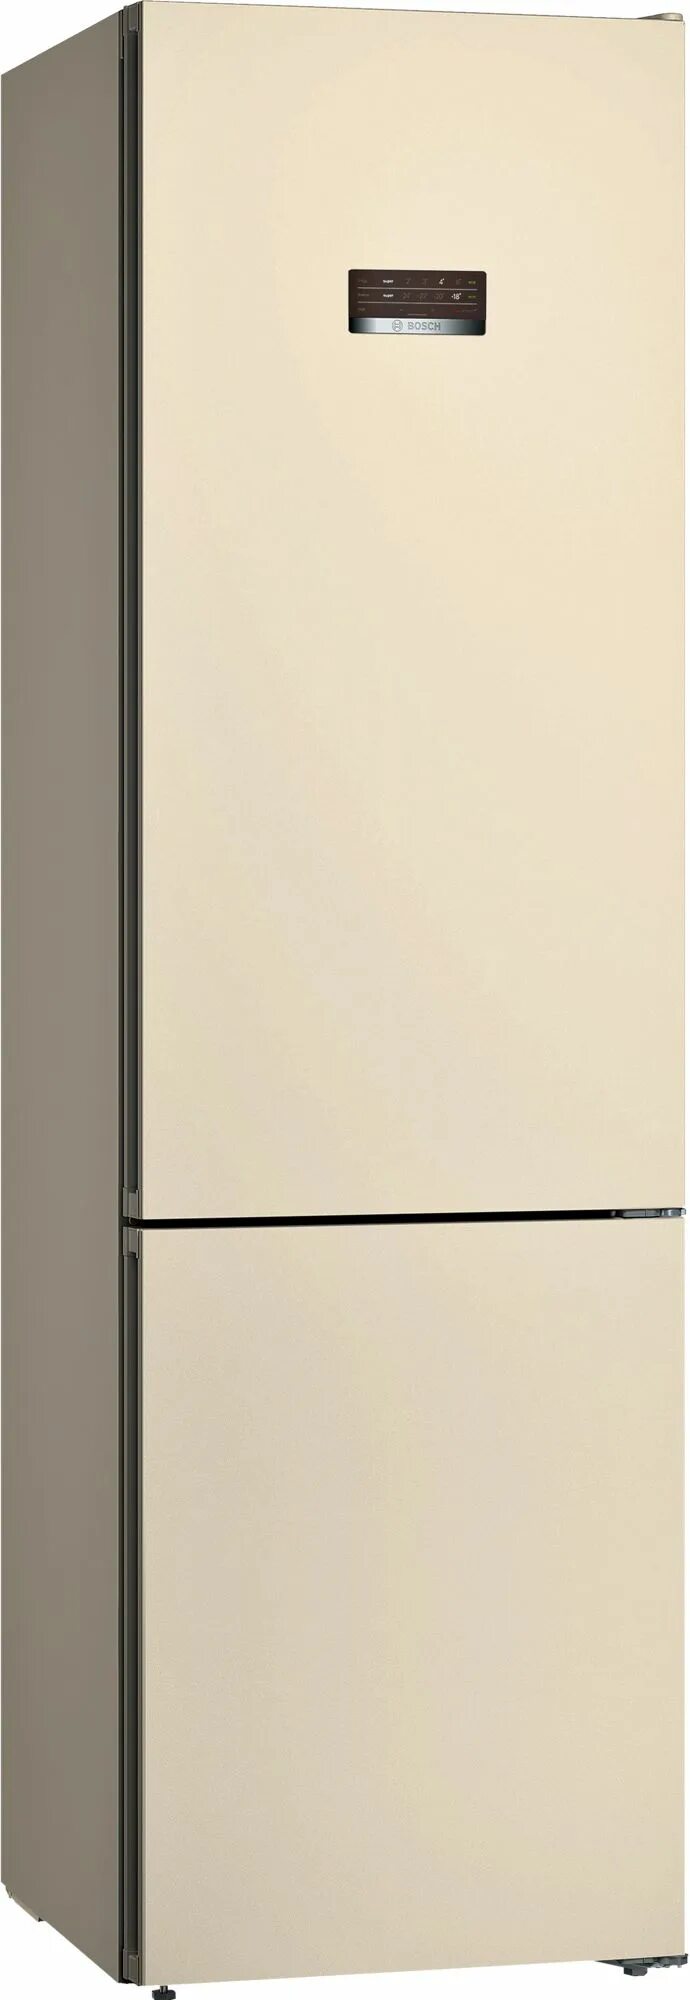 Холодильник Bosch kgv36xk2ar, бежевый. Холодильник Bosch kgn39xk31r. Холодильник Bosch kgn36nk21r. Bosch kgn36nk21r бежевый. Холодильник слоновая кость